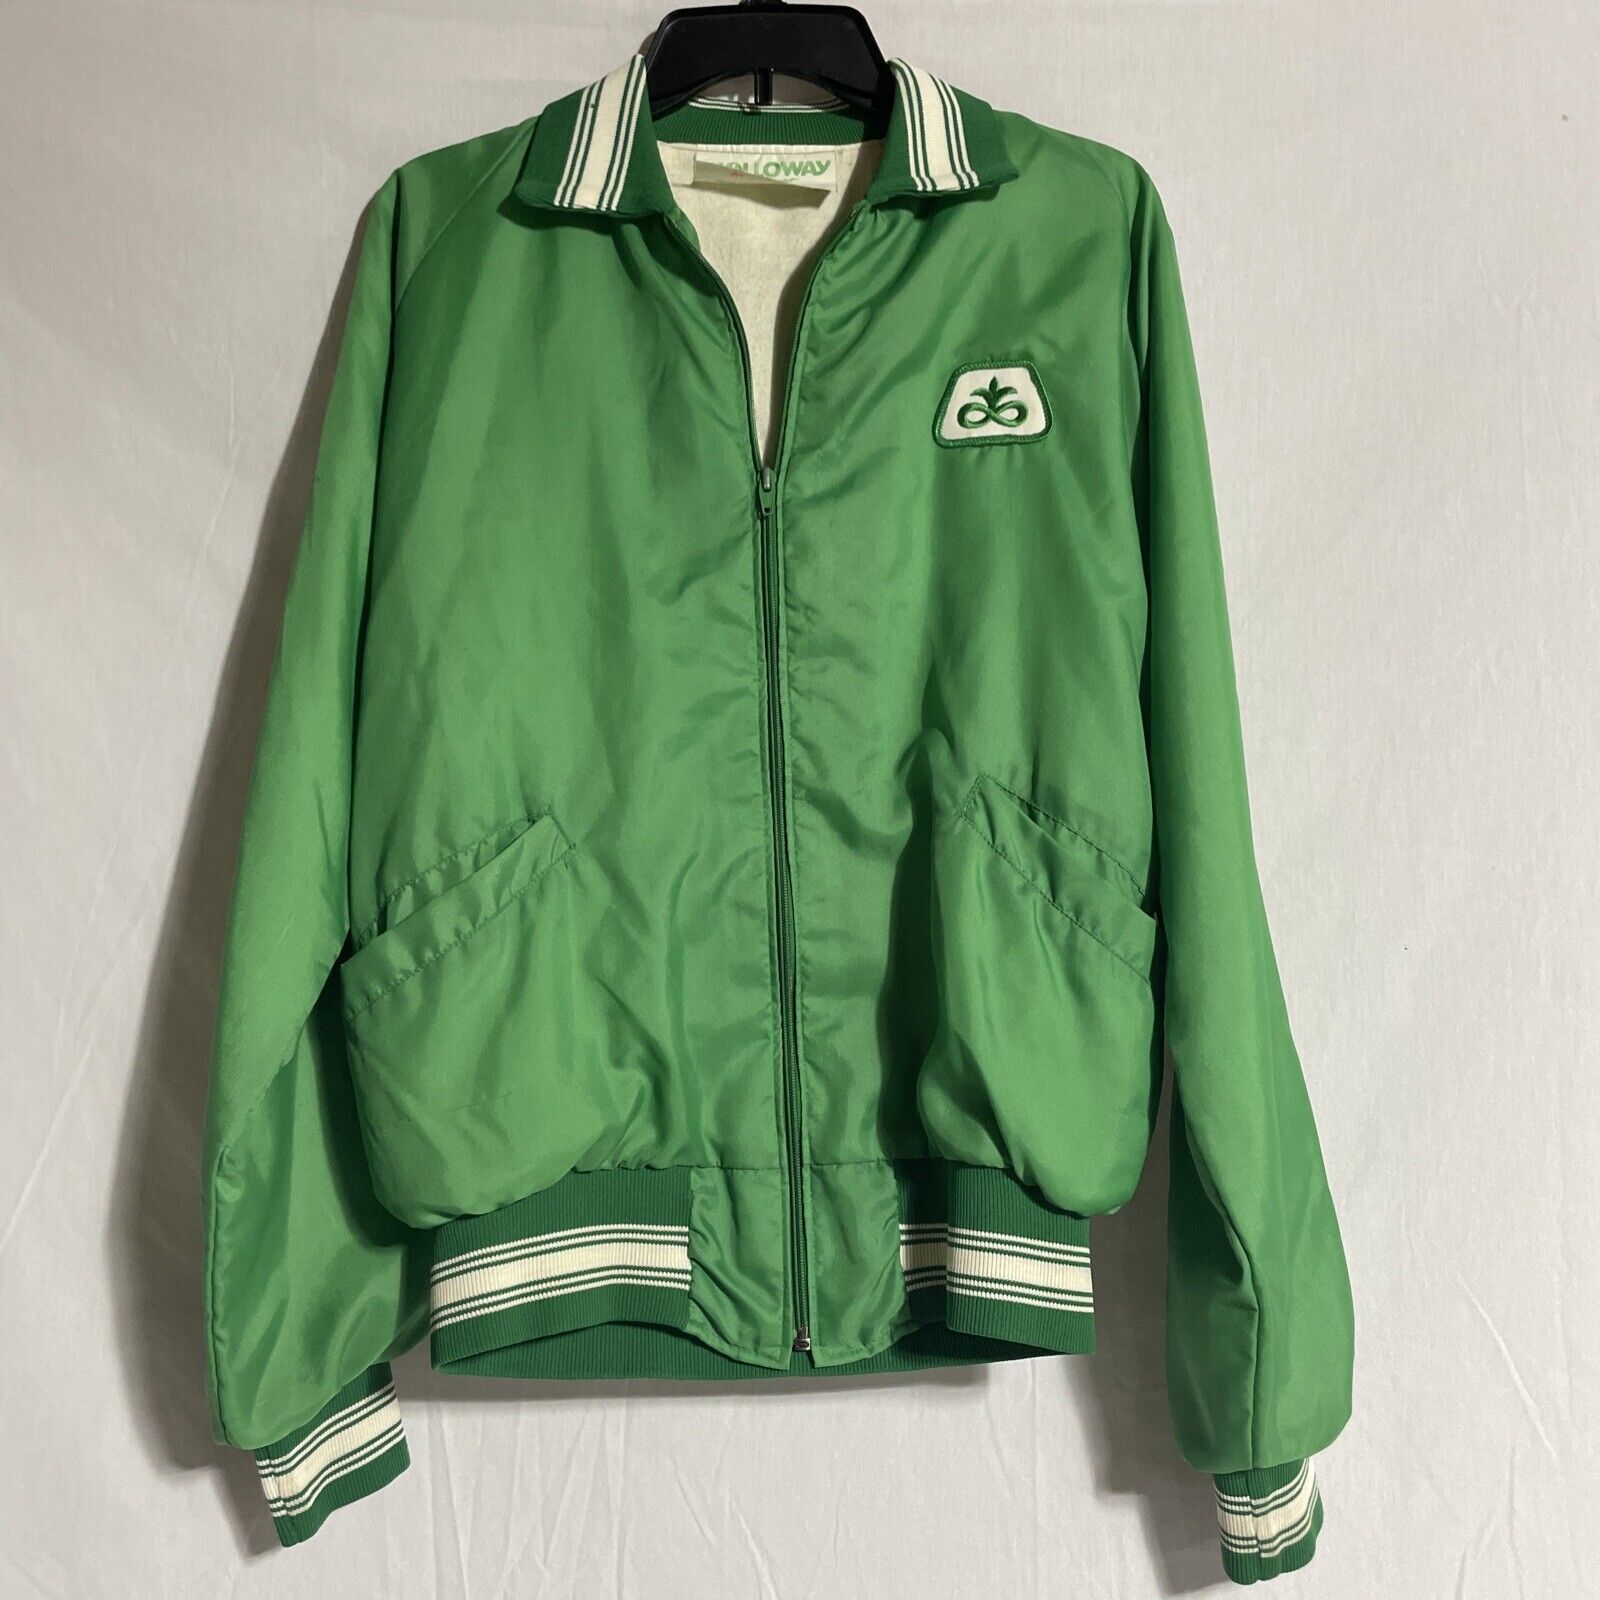 Vintage Green Windbreaker Jacket Holloway Pioneer Seeds Zip-Up Elastic Cuffs M